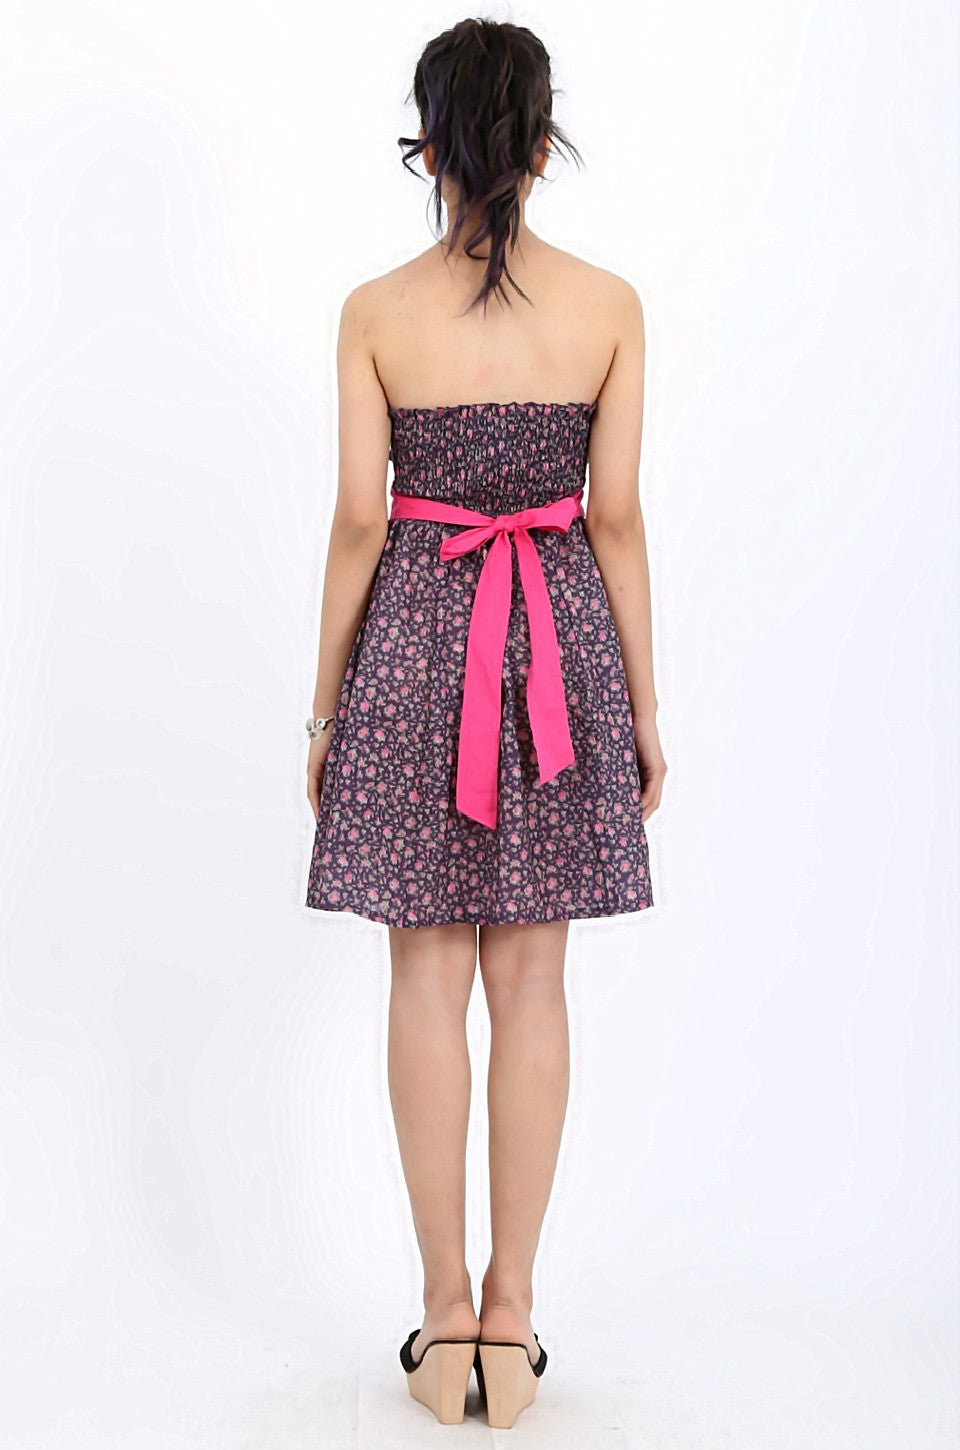 MISS PINKI Savannah mini dress